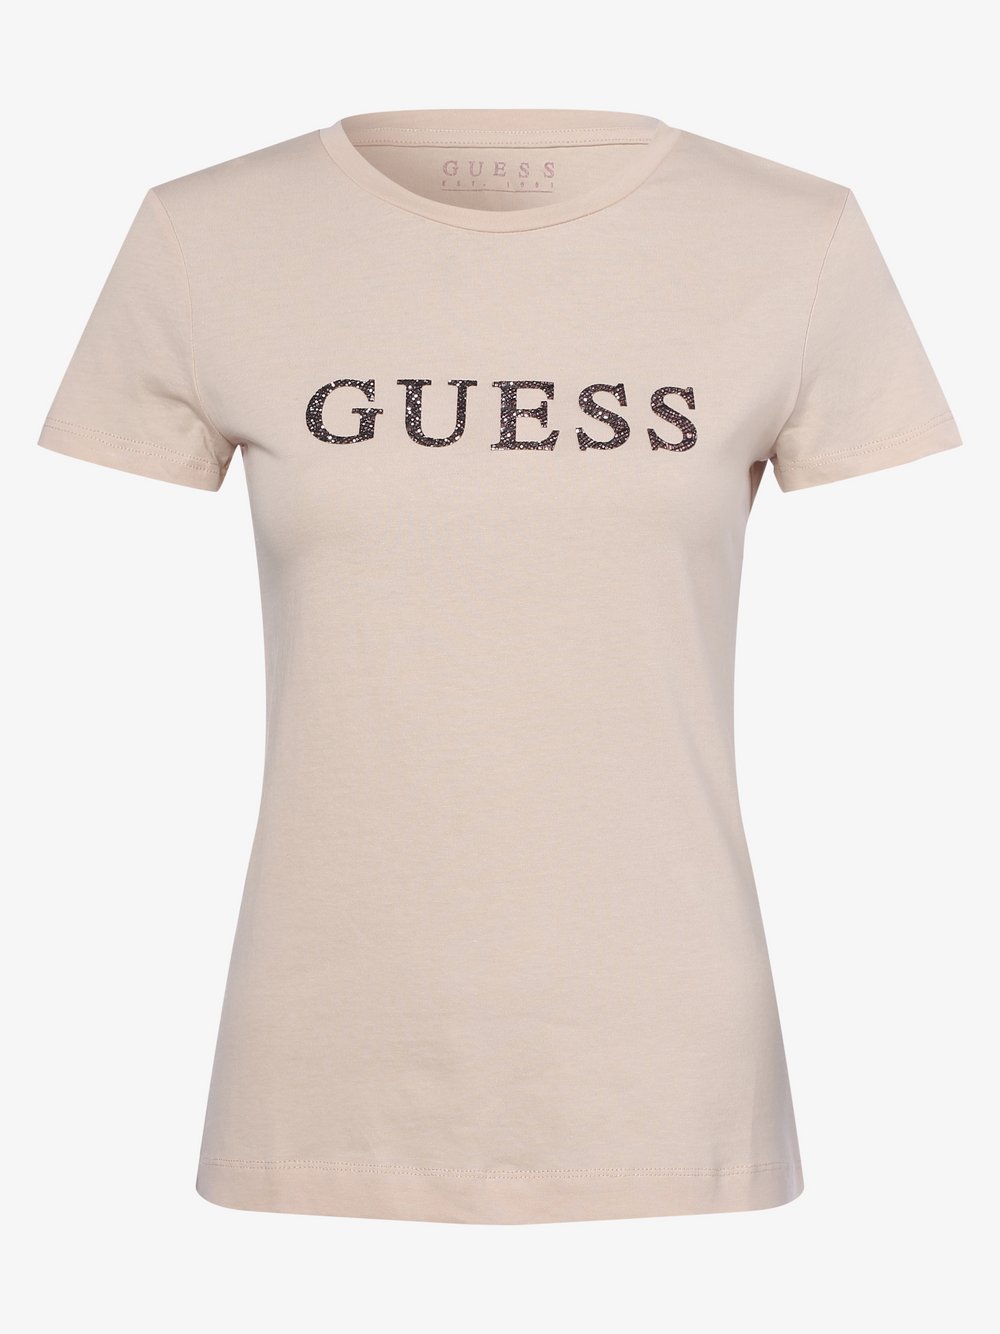 GUESS - T-shirt damski, beżowy